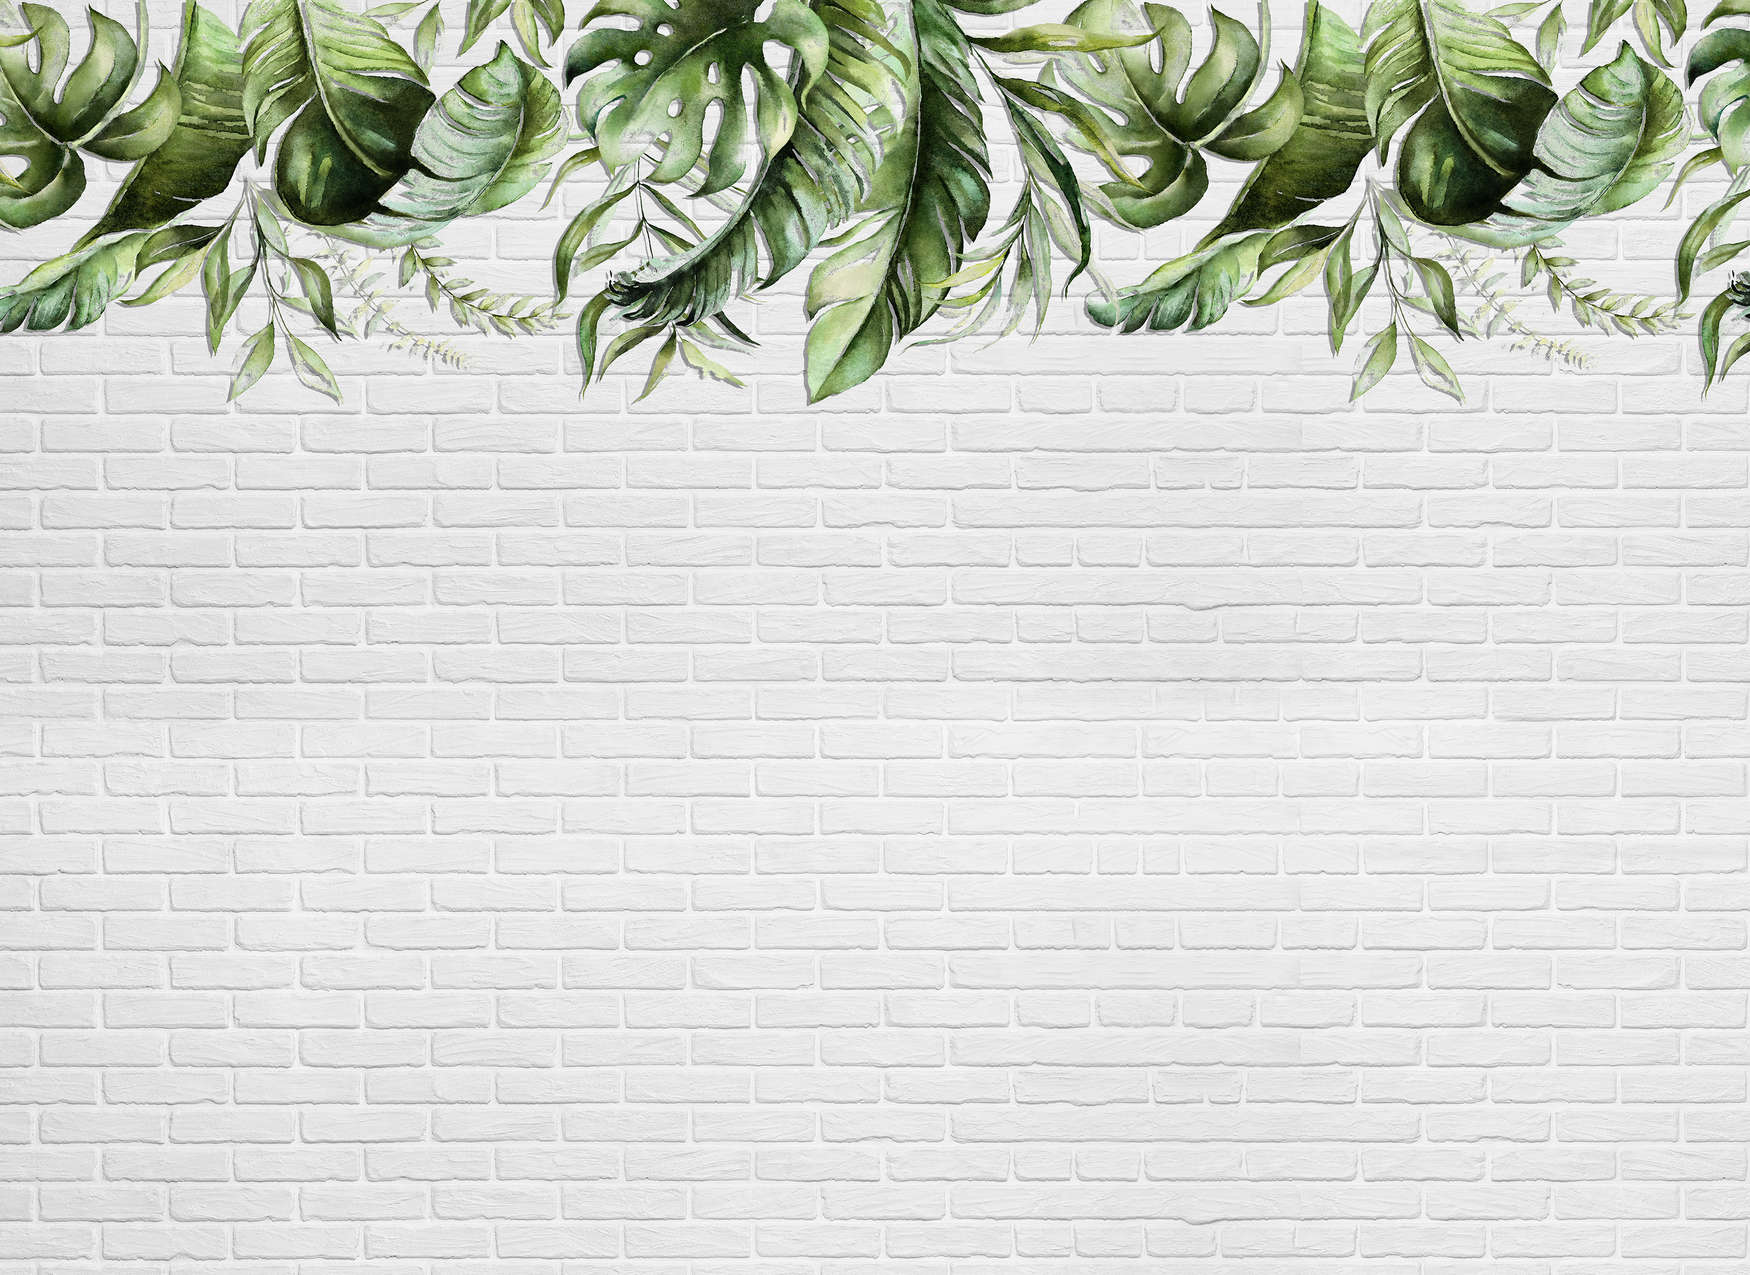             Digital behang met kleine bladranken op een stenen muur - Groen, Wit
        